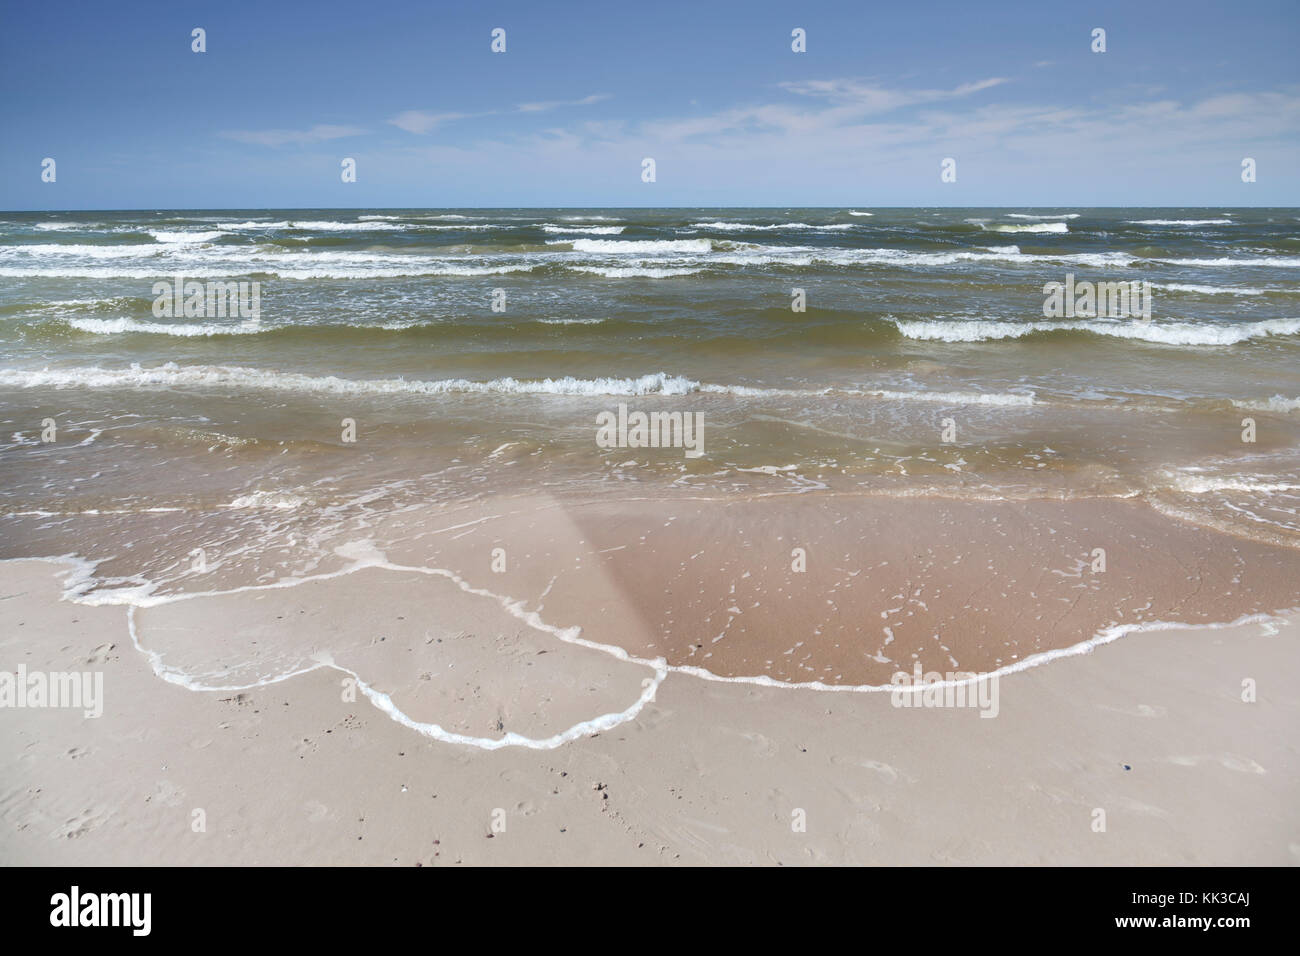 Coeur dessiné sur la plage sable - Maison de l'amour - relation à distance - Concept Banque D'Images